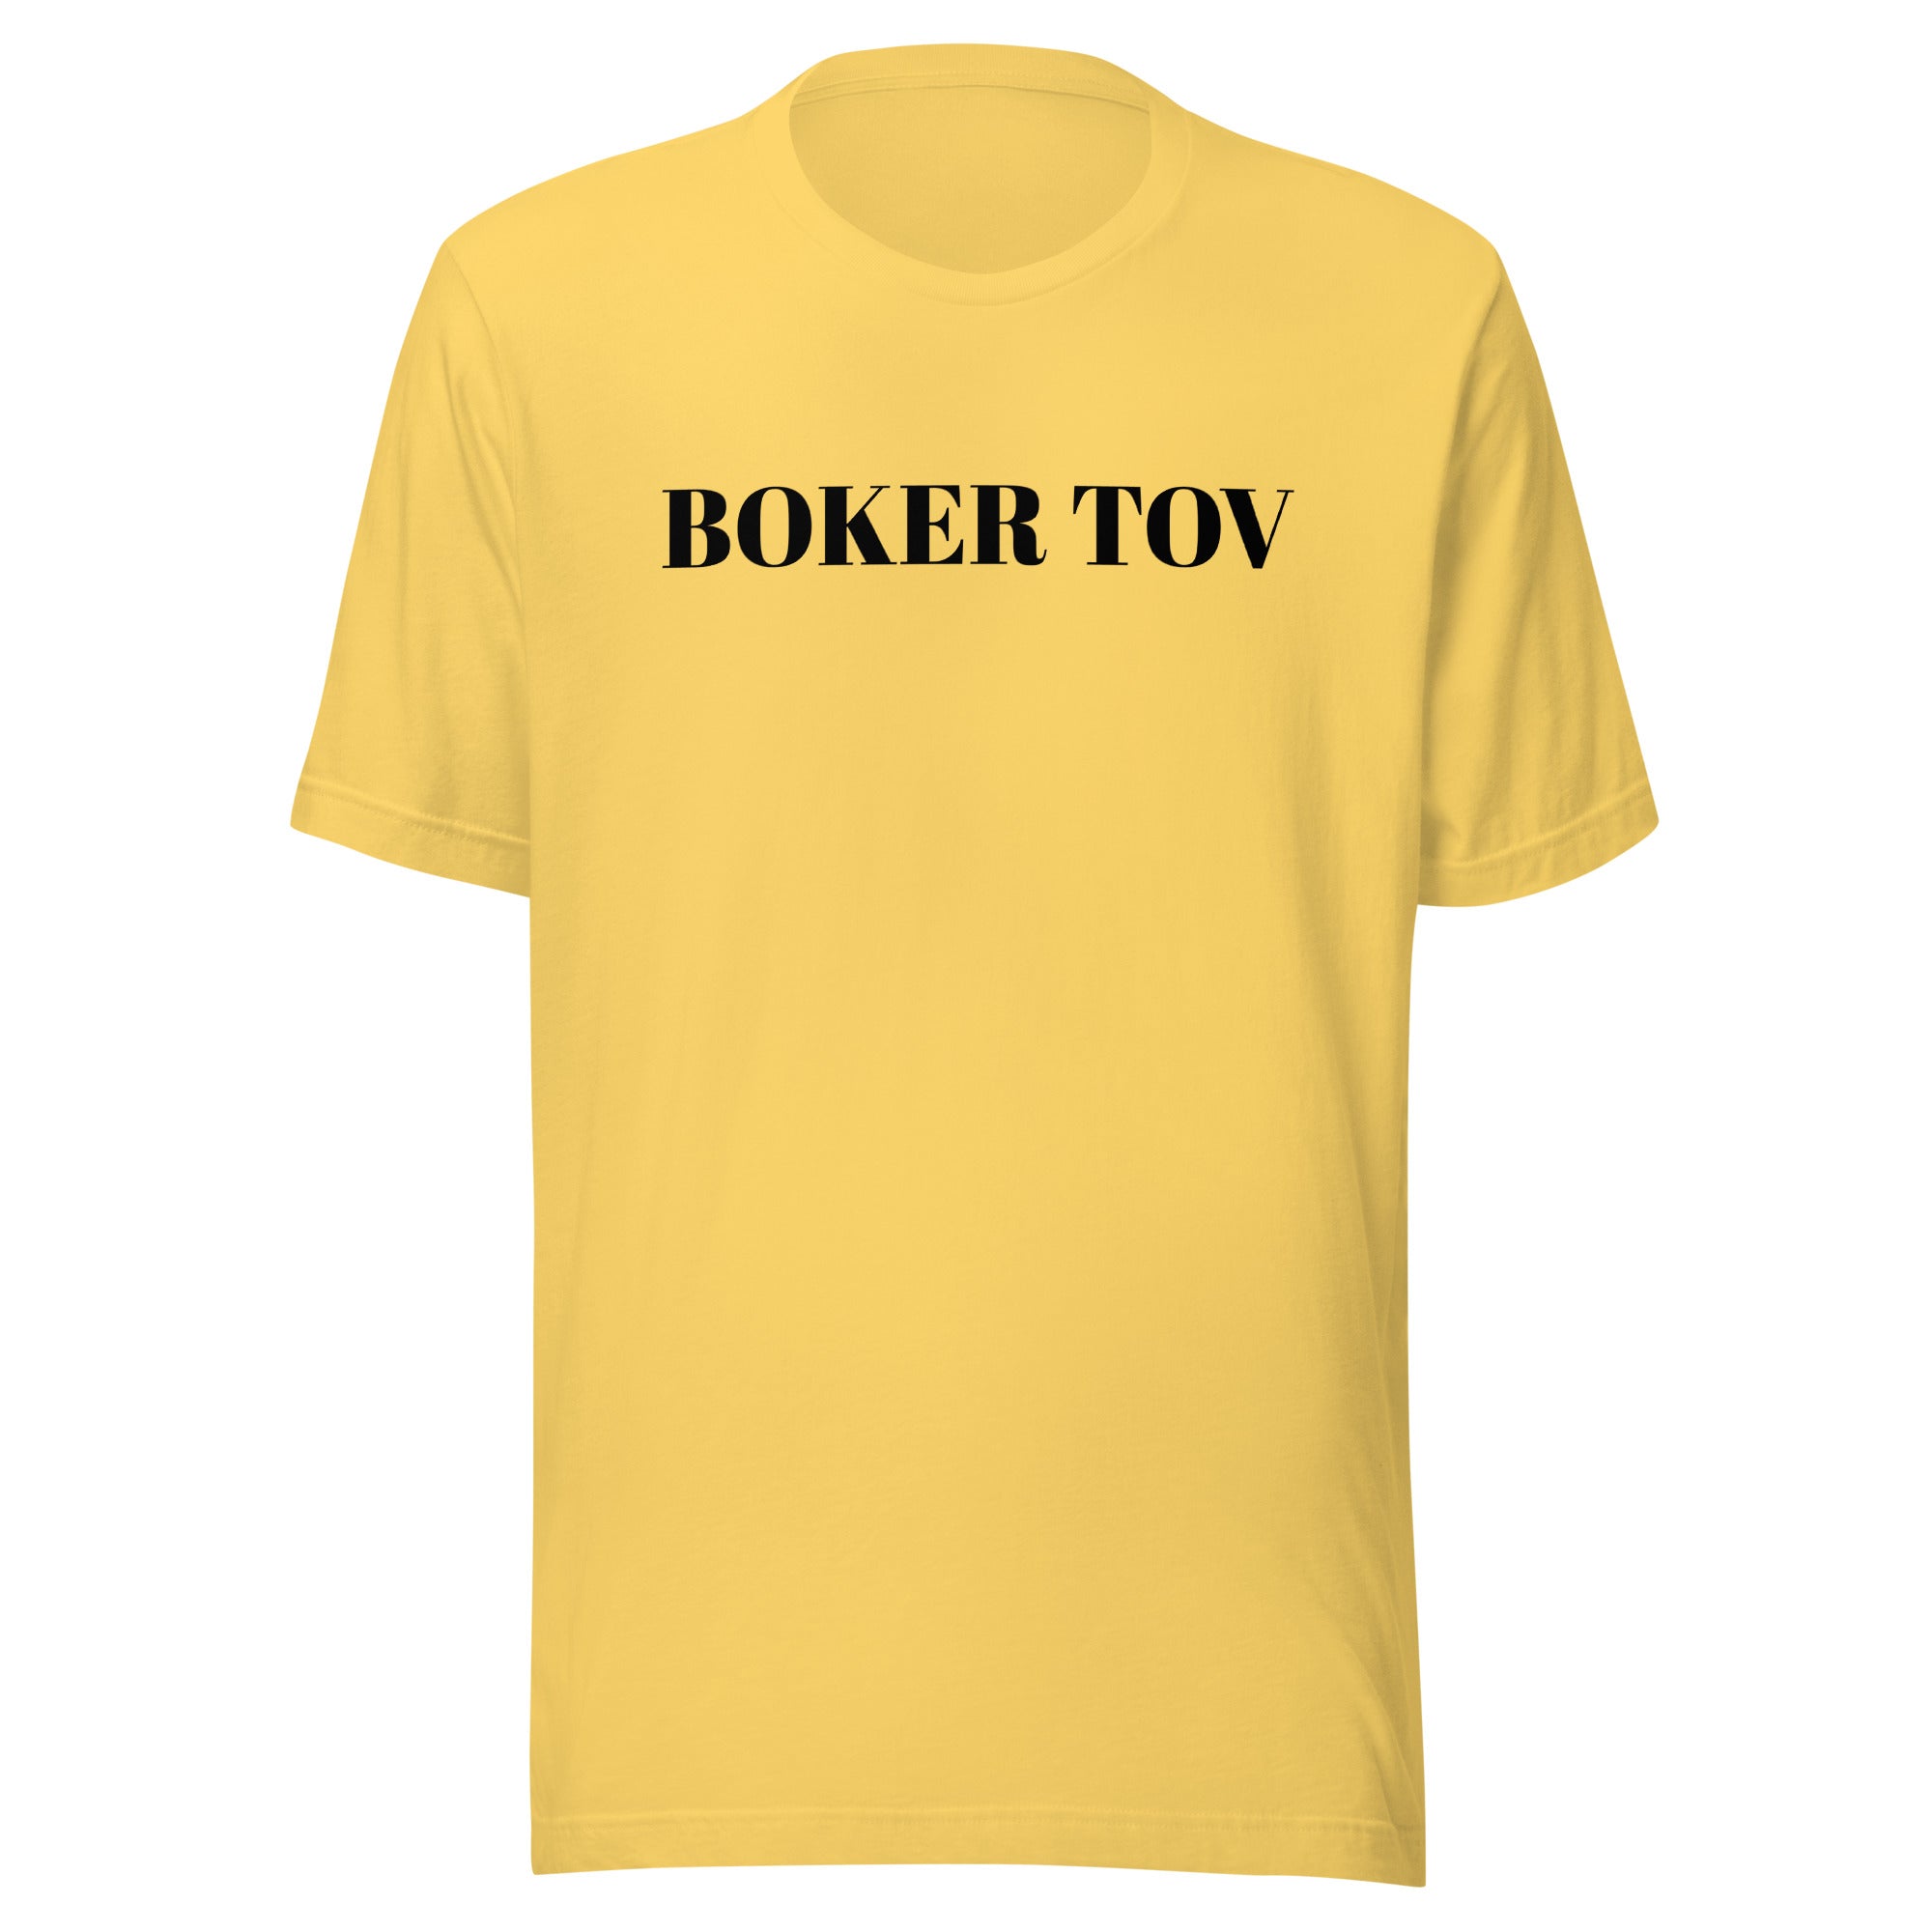 BOKER TOV